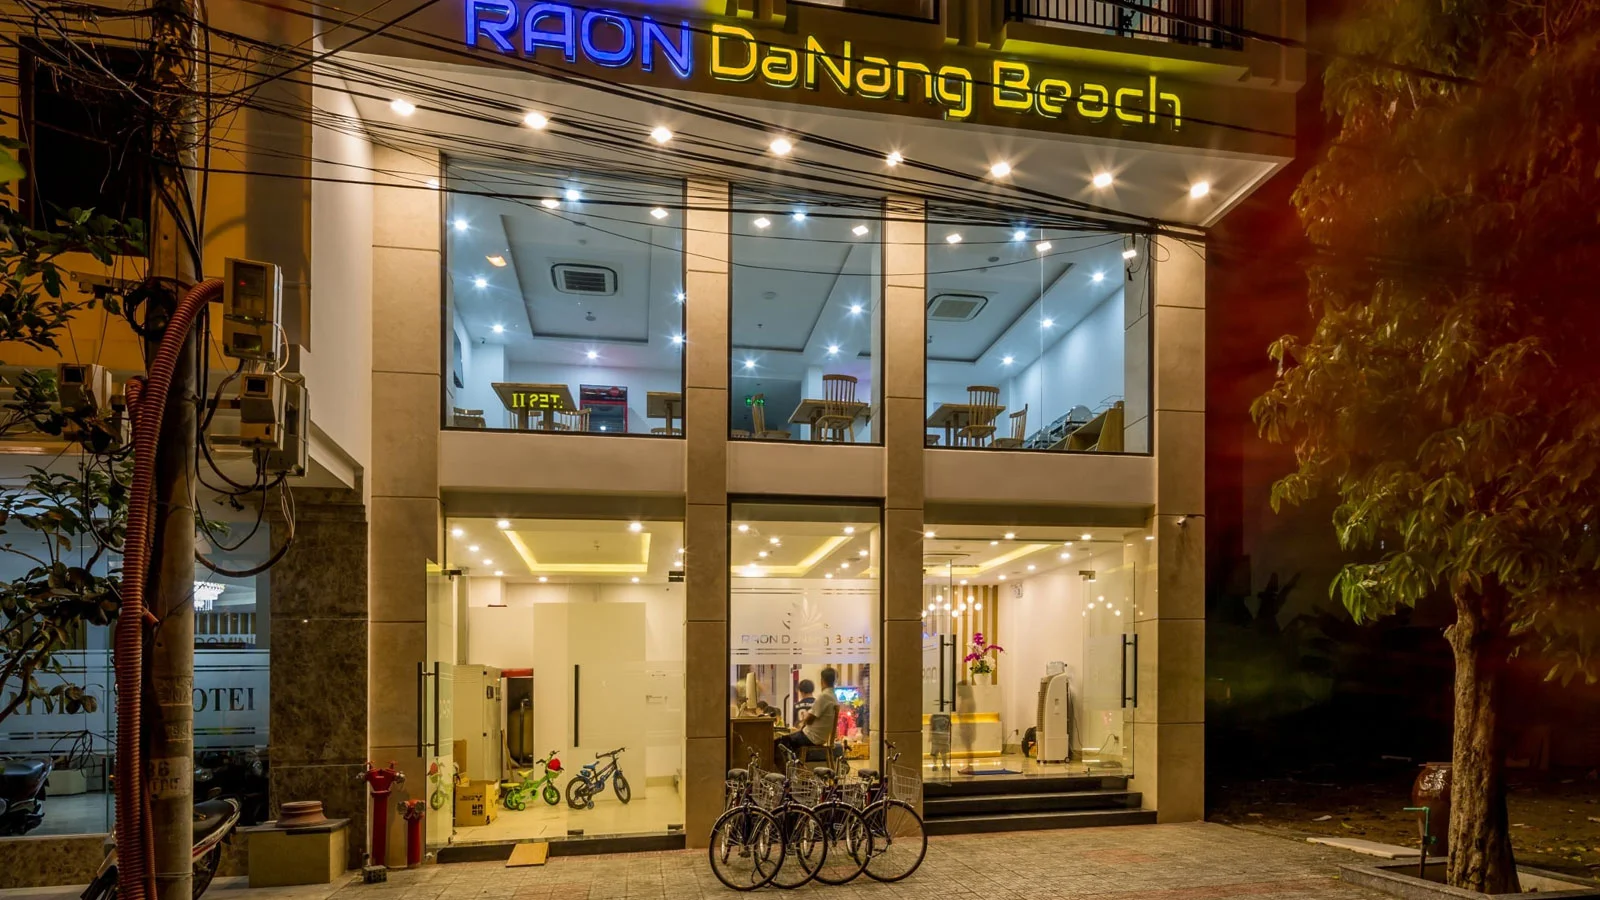 Khách sạn RAON Hotel Đà Nẵng